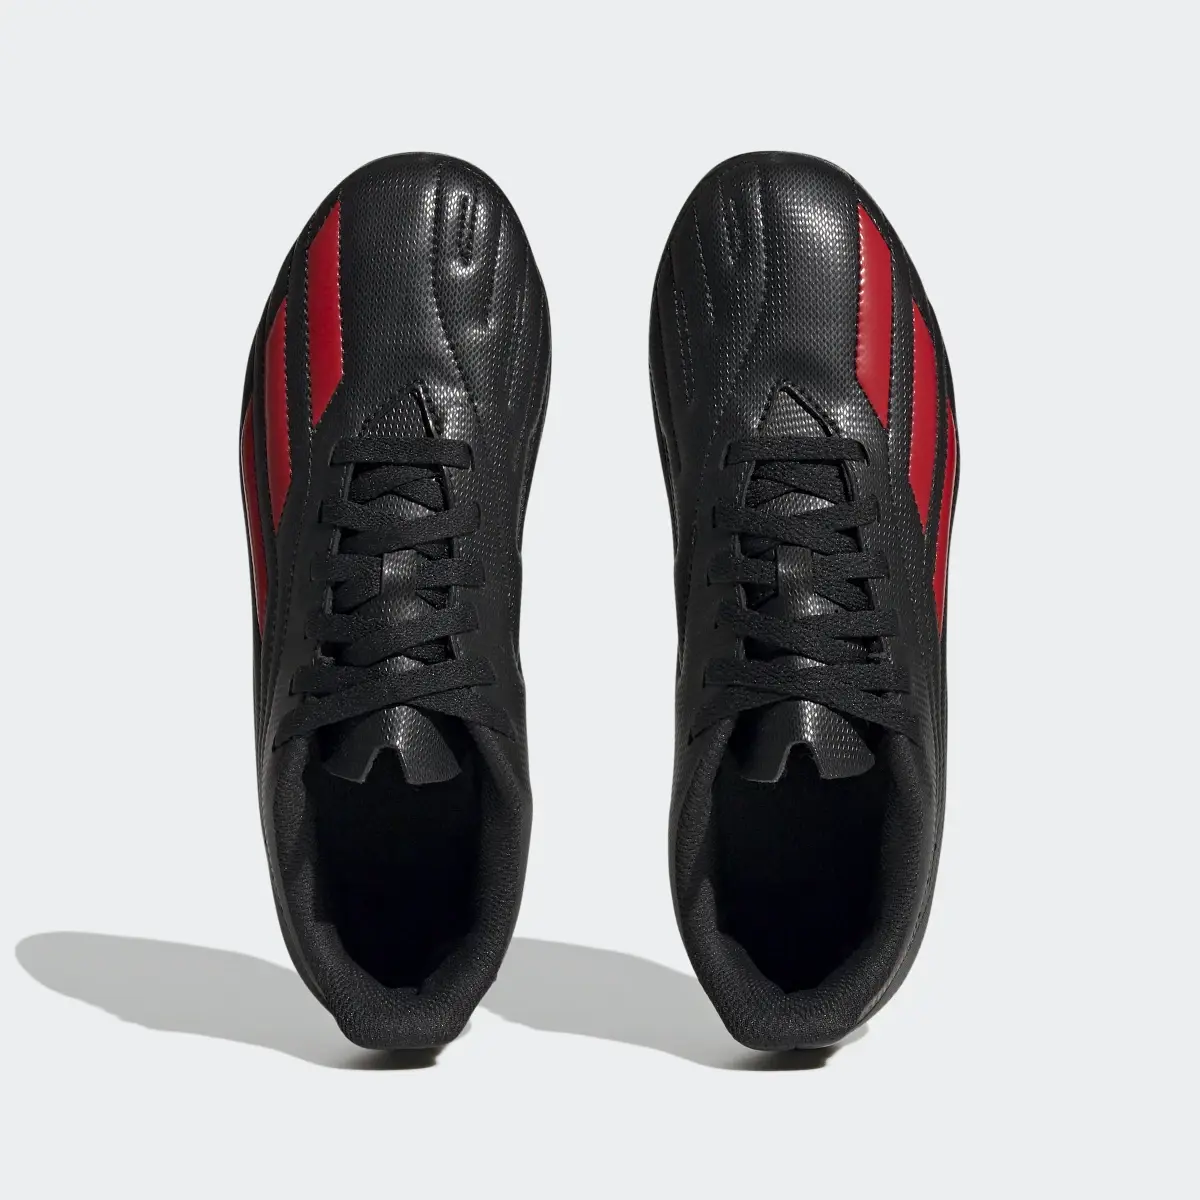 Adidas Deportivo II Flexible Ground Boots. 3